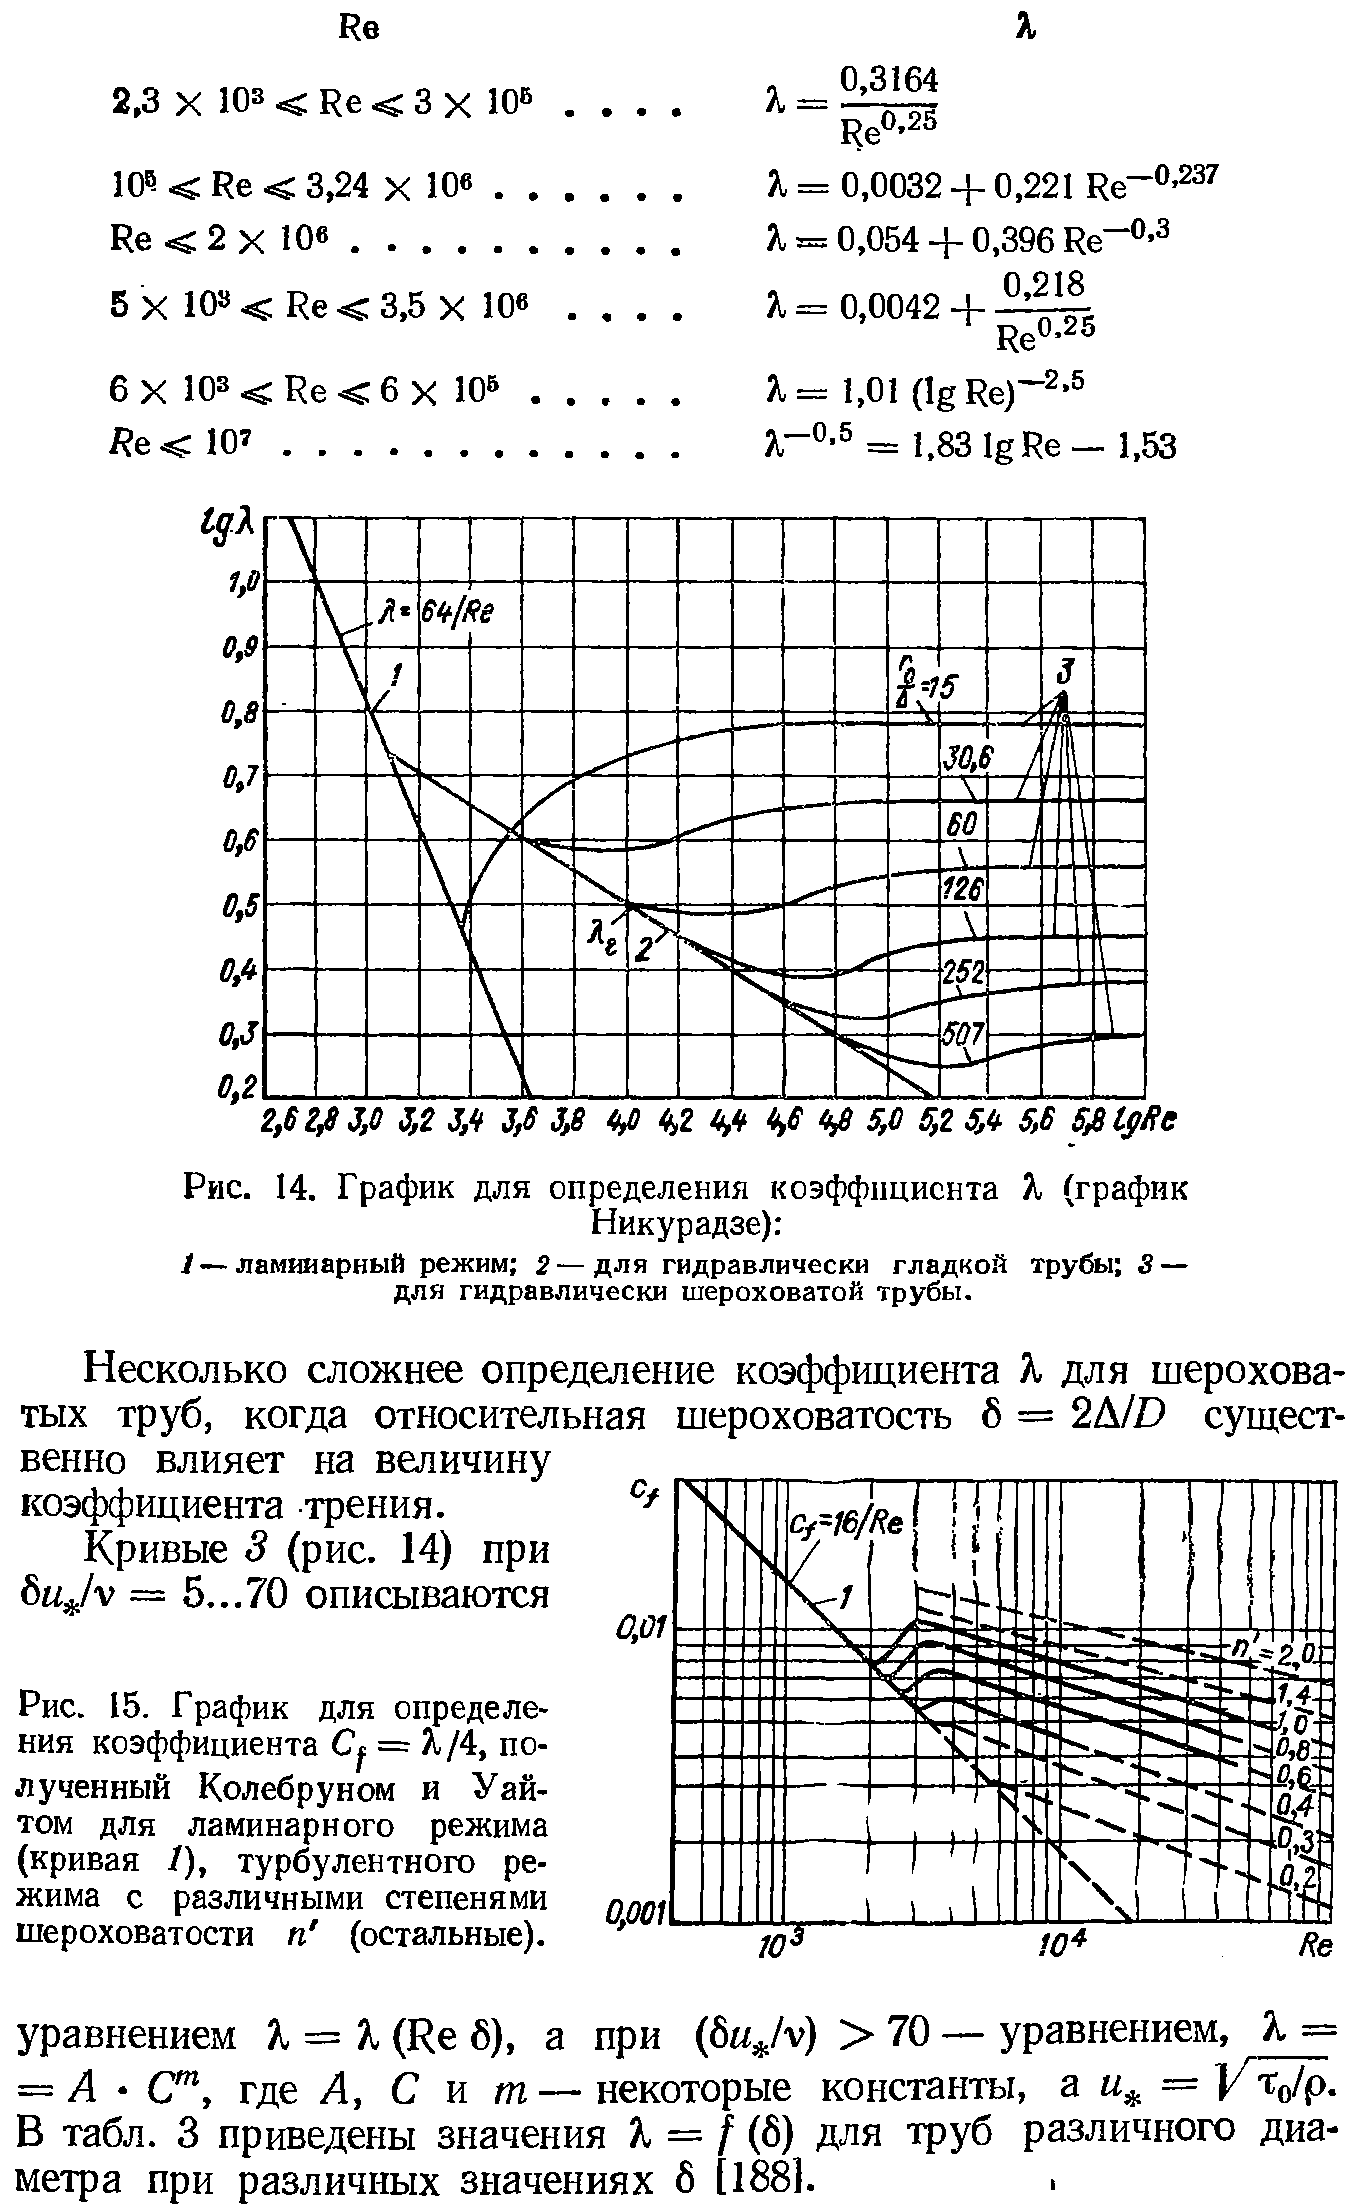 Несколько сложнее определение коэффициента К для шероховатых труб, когда относительная шероховатость 6 == 2А/0 существенно влияет на величину коэффициента трения.
